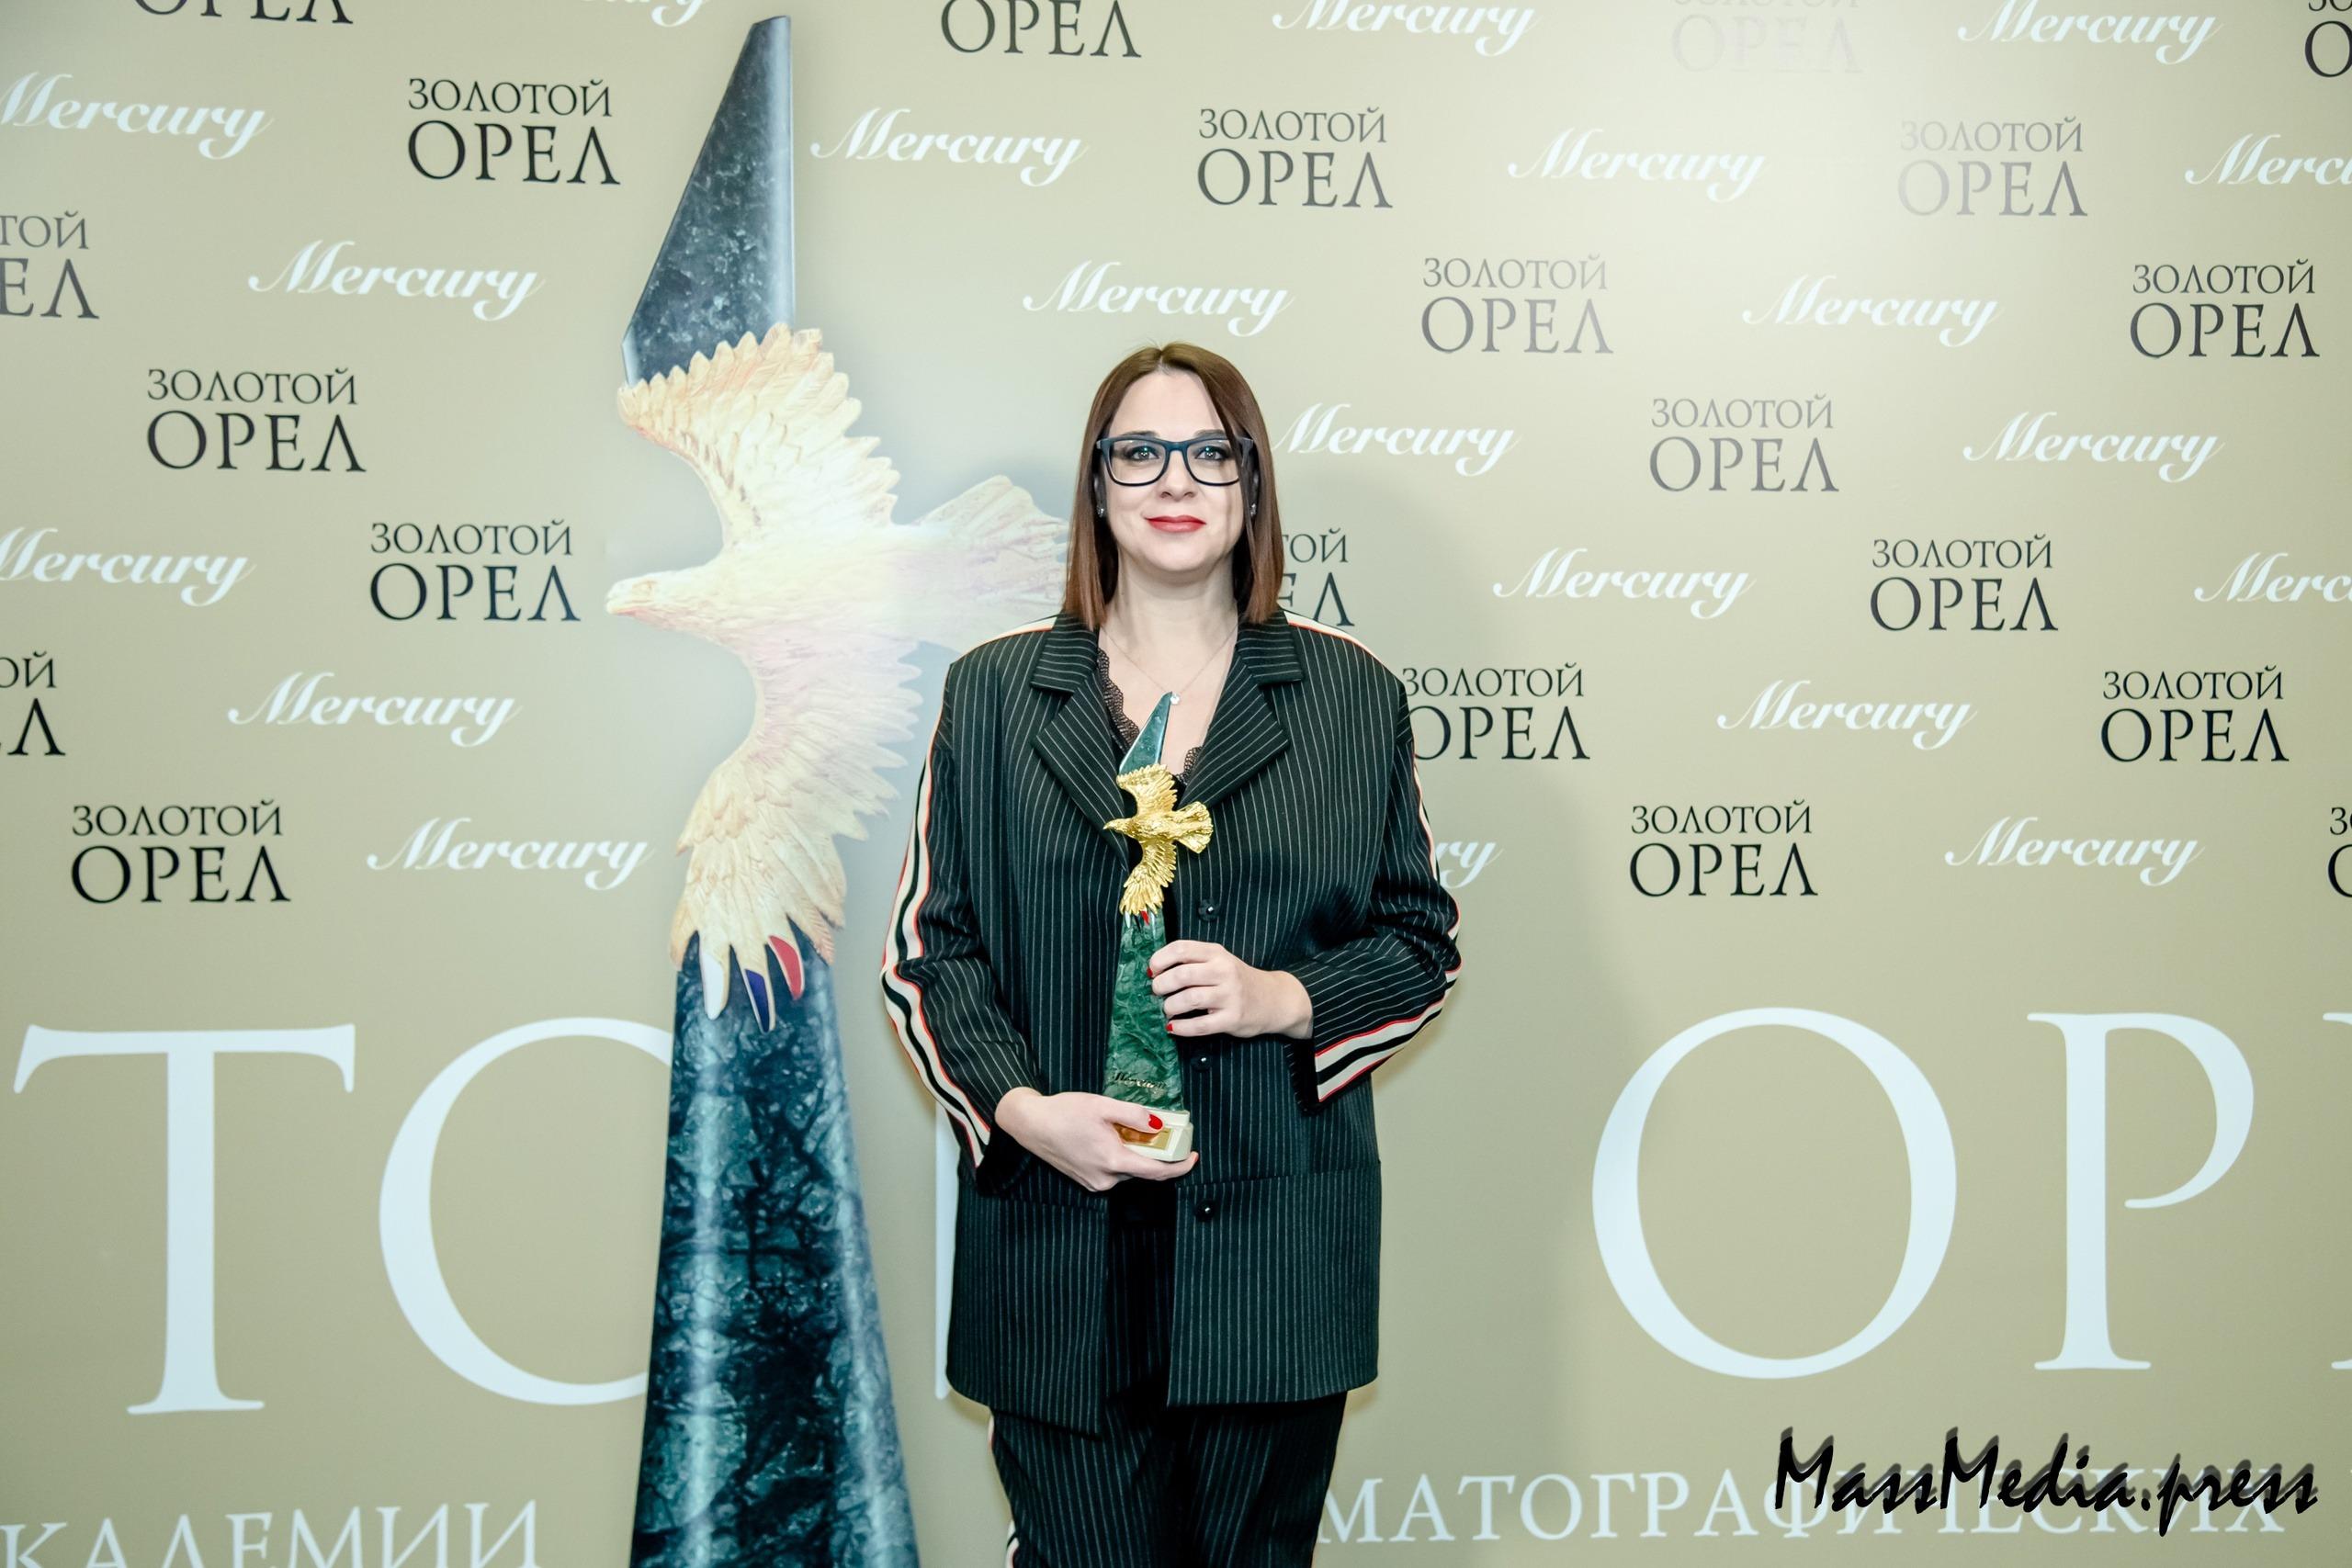 Объявлены лауреаты XXI Национальной кинопремии “Золотой орел”